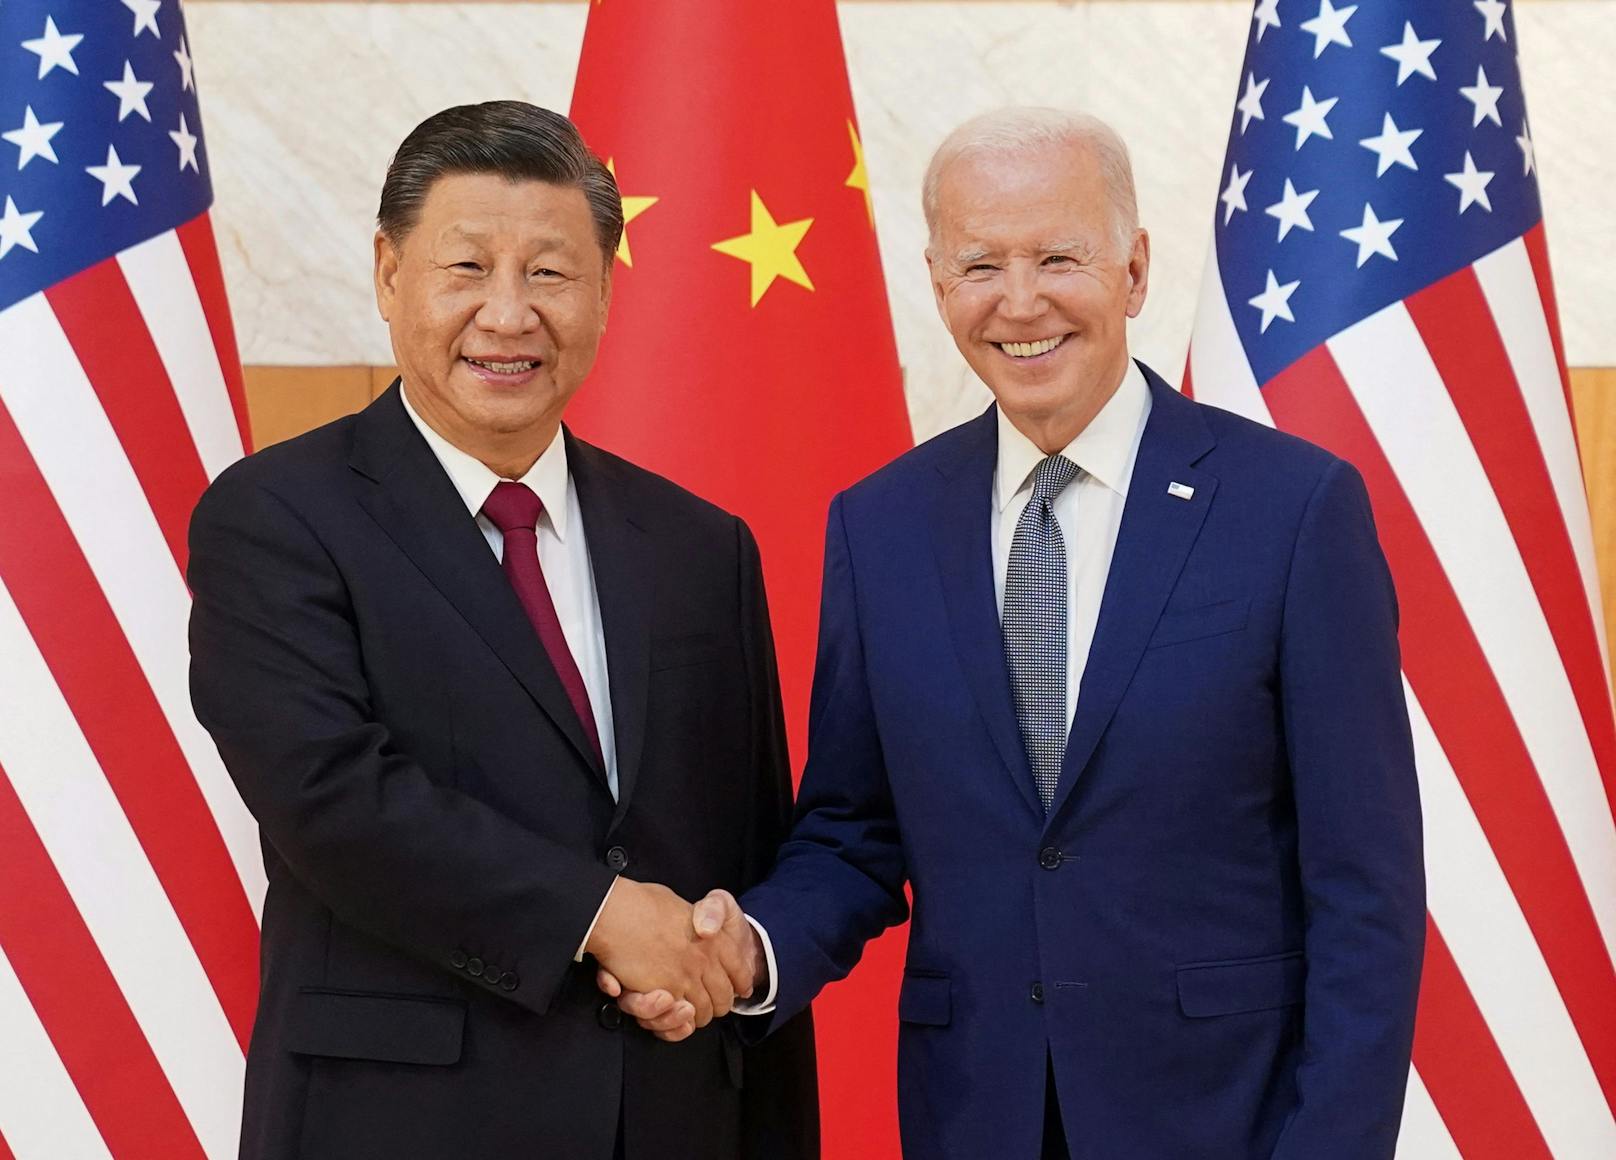 US-Präsident Joe Biden schüttelt dem chinesischen Präsidenten Xi Jinping die Hand, als sie sich am Rande des G20-Gipfels in Bali, Indonesien, am 14. November 2022 treffen.&nbsp;